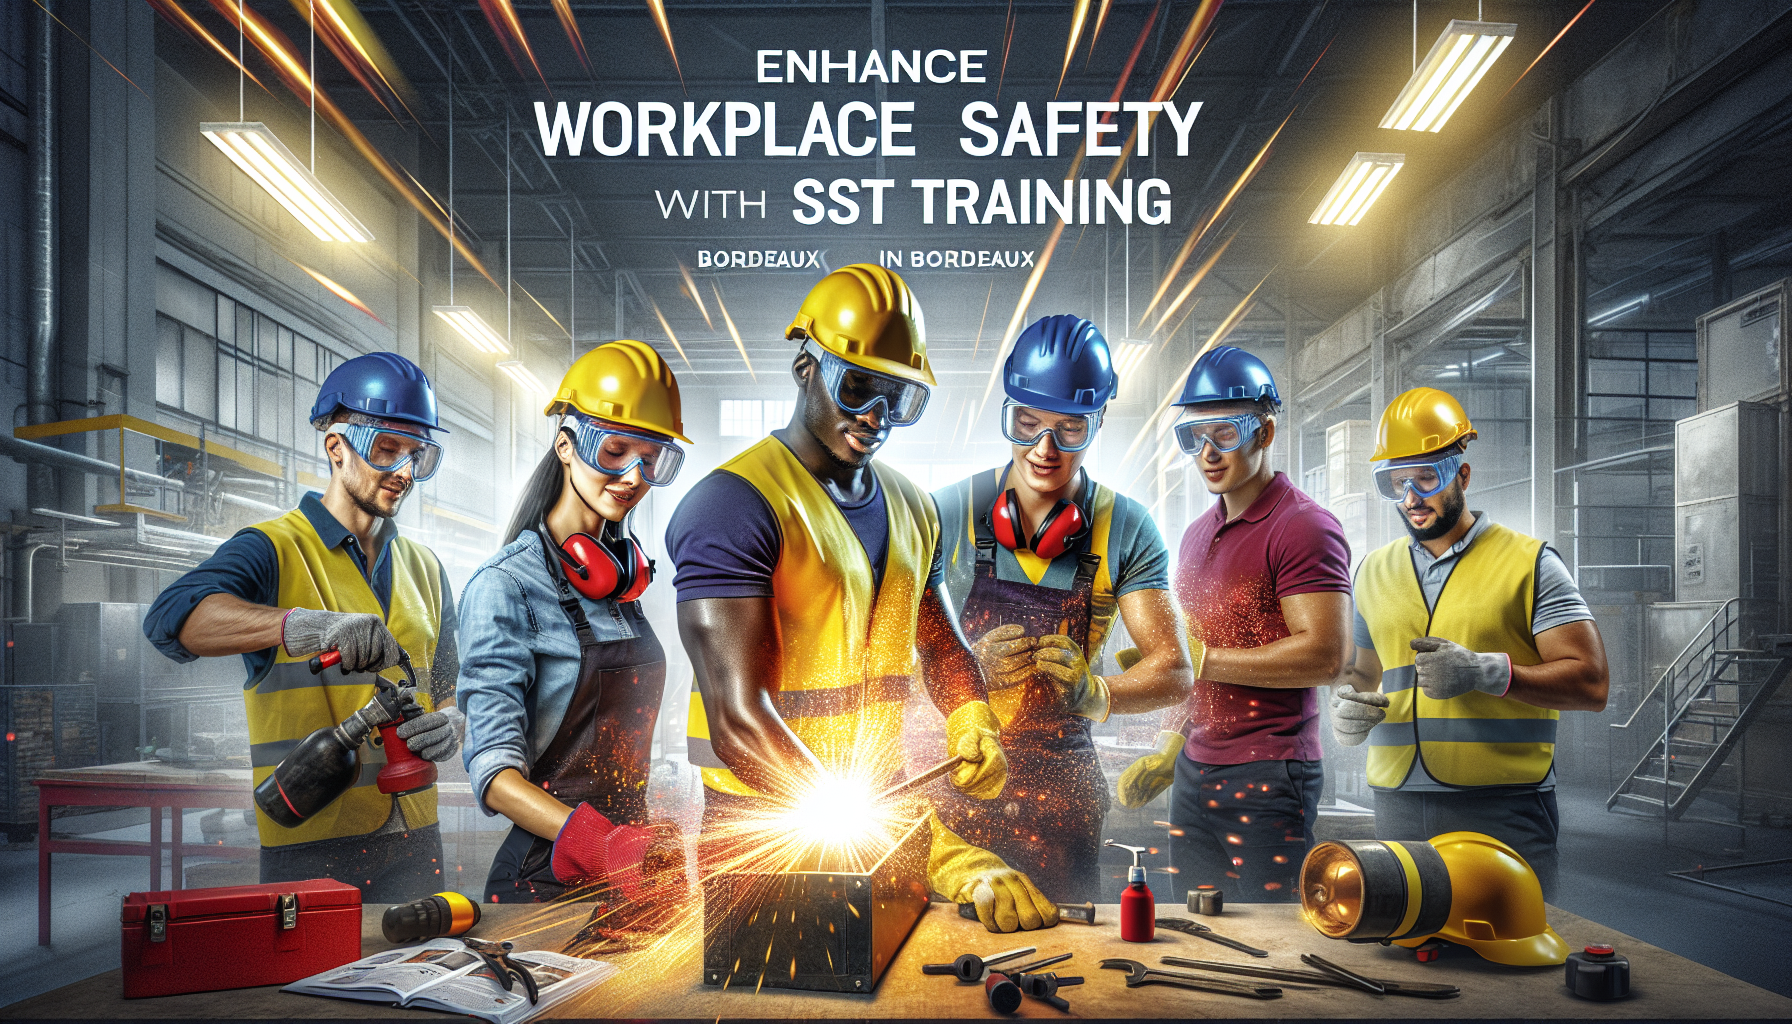 découvrez comment une formation sst à bordeaux peut contribuer à renforcer la sécurité au travail. les bénéfices pour les employés et l'entreprise.